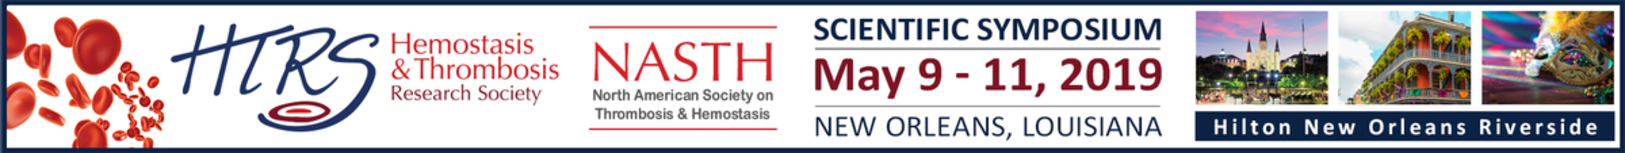 HTRS/NASTH 2019 Scientific Symposium